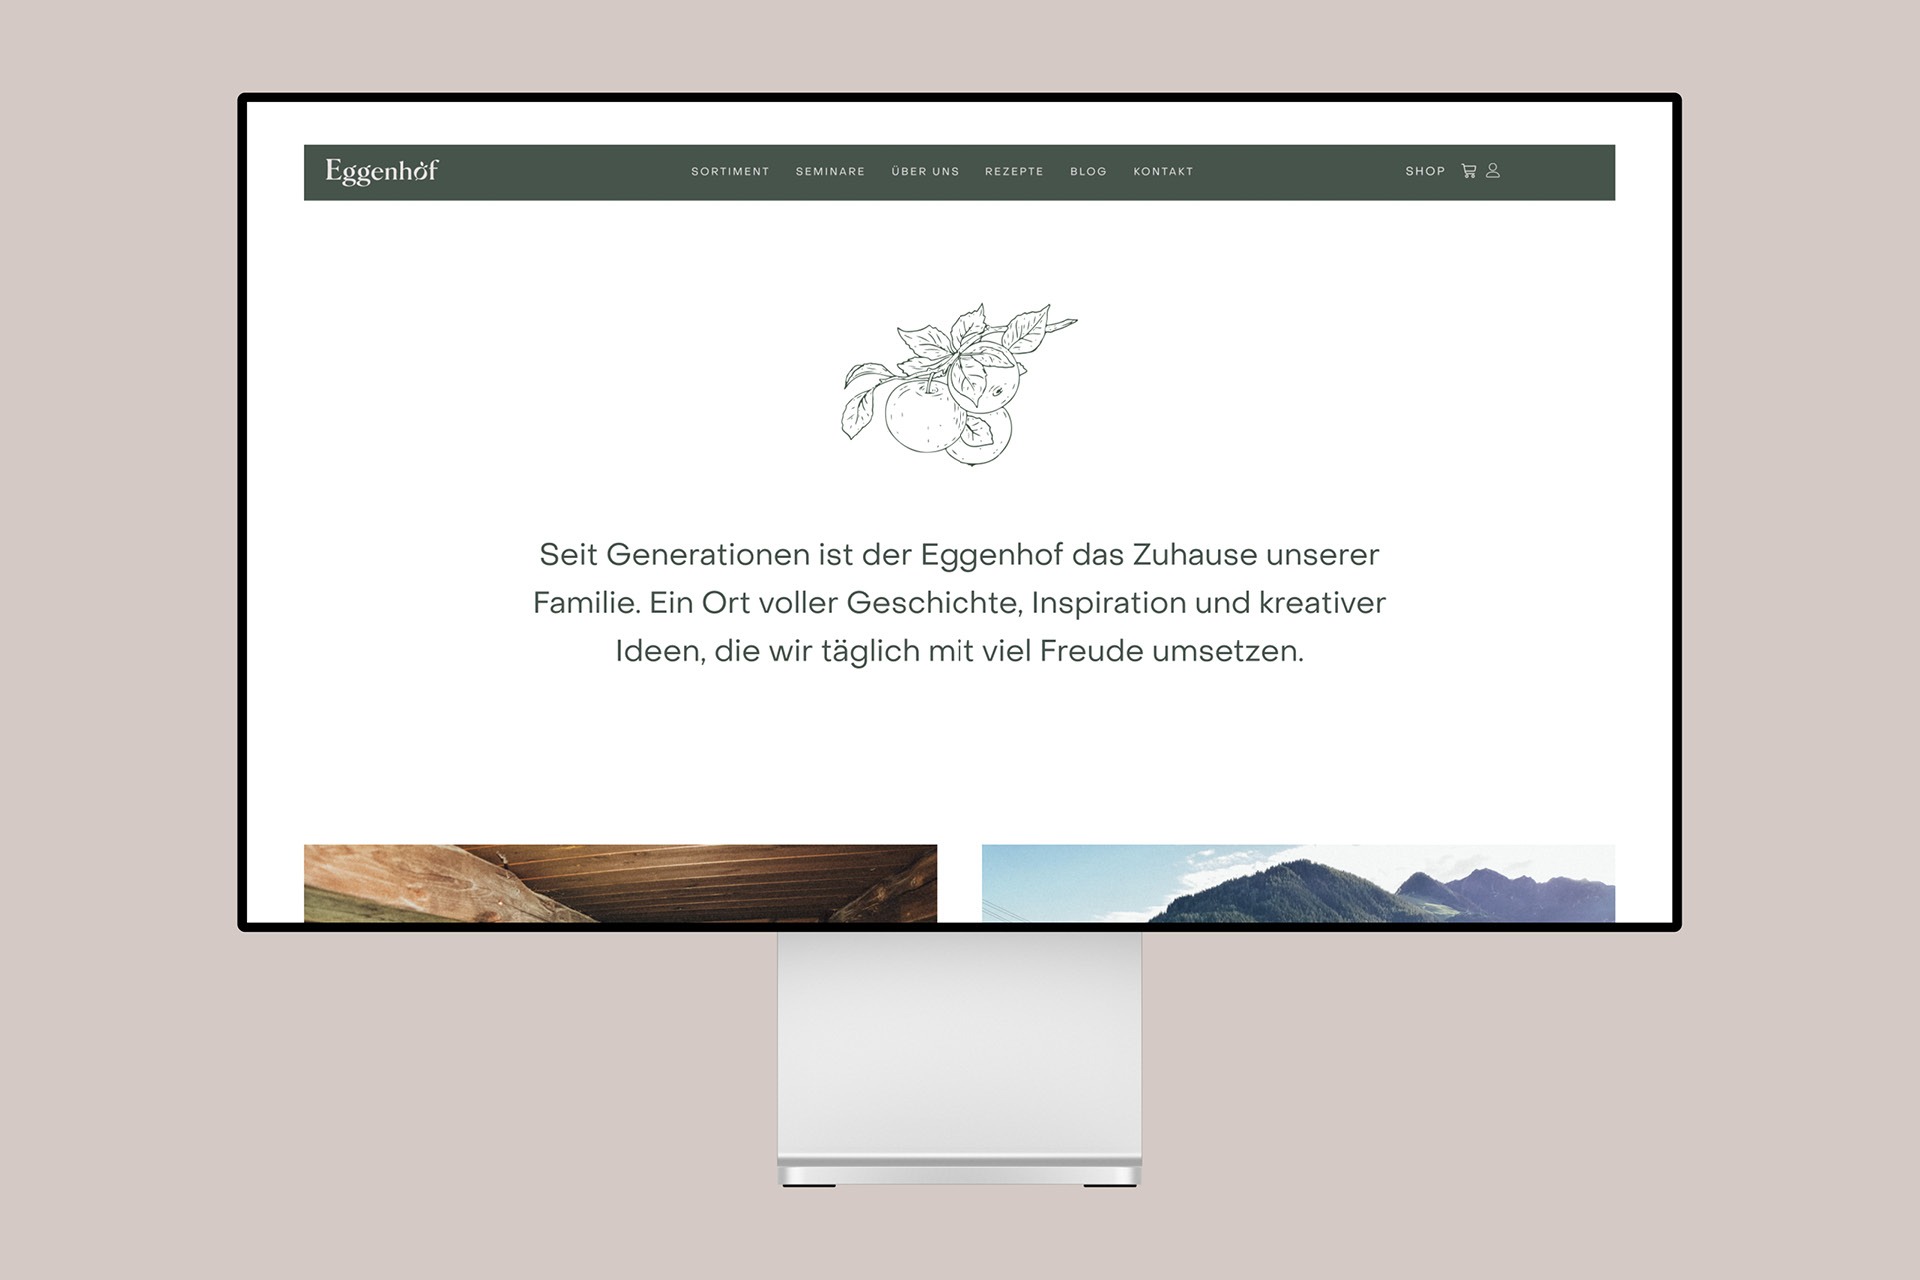 Ein Computerbildschirm, auf dem das Design der Eggenhof-Website angezeigt wird.